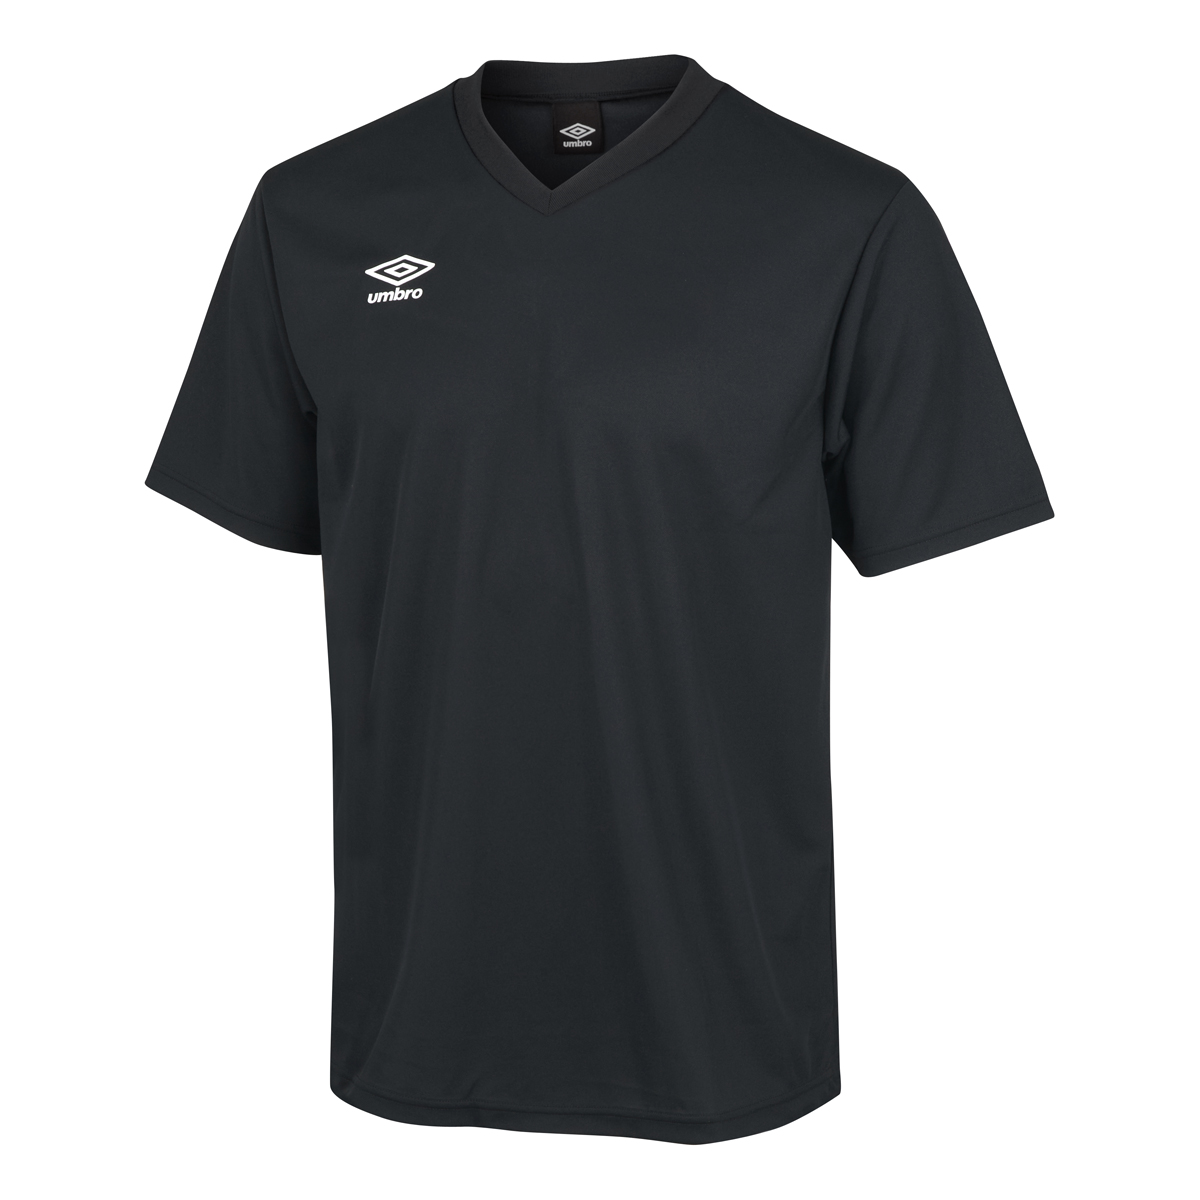 umbro アンブロ サッカー UAS6307J BLK ジュニア ゲームシャツ(ワンポイント) ブラック トップス